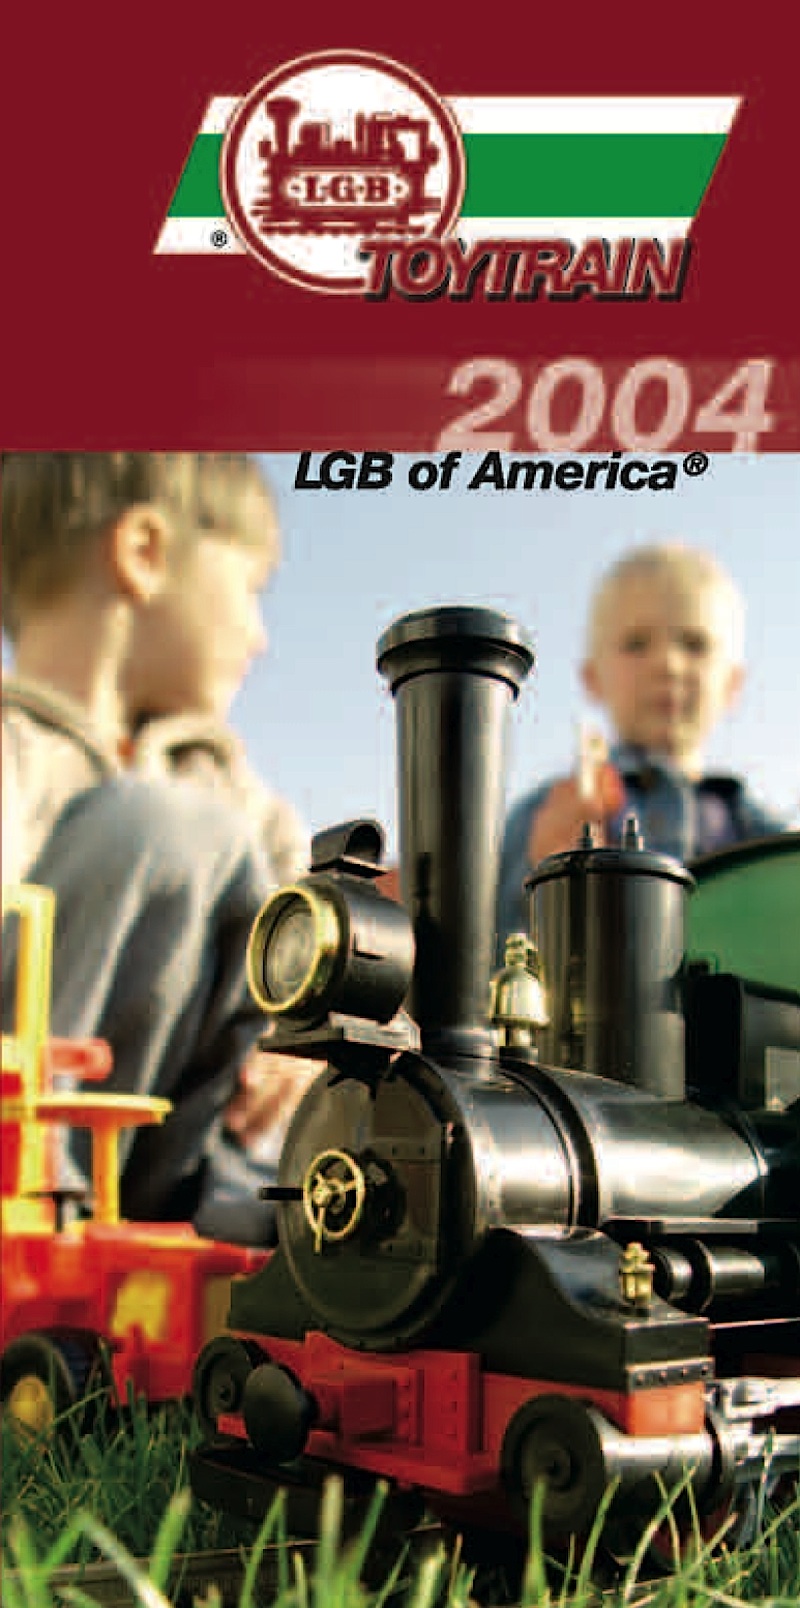 LGB Toy Train US Faltblatt (Brochure) 2004